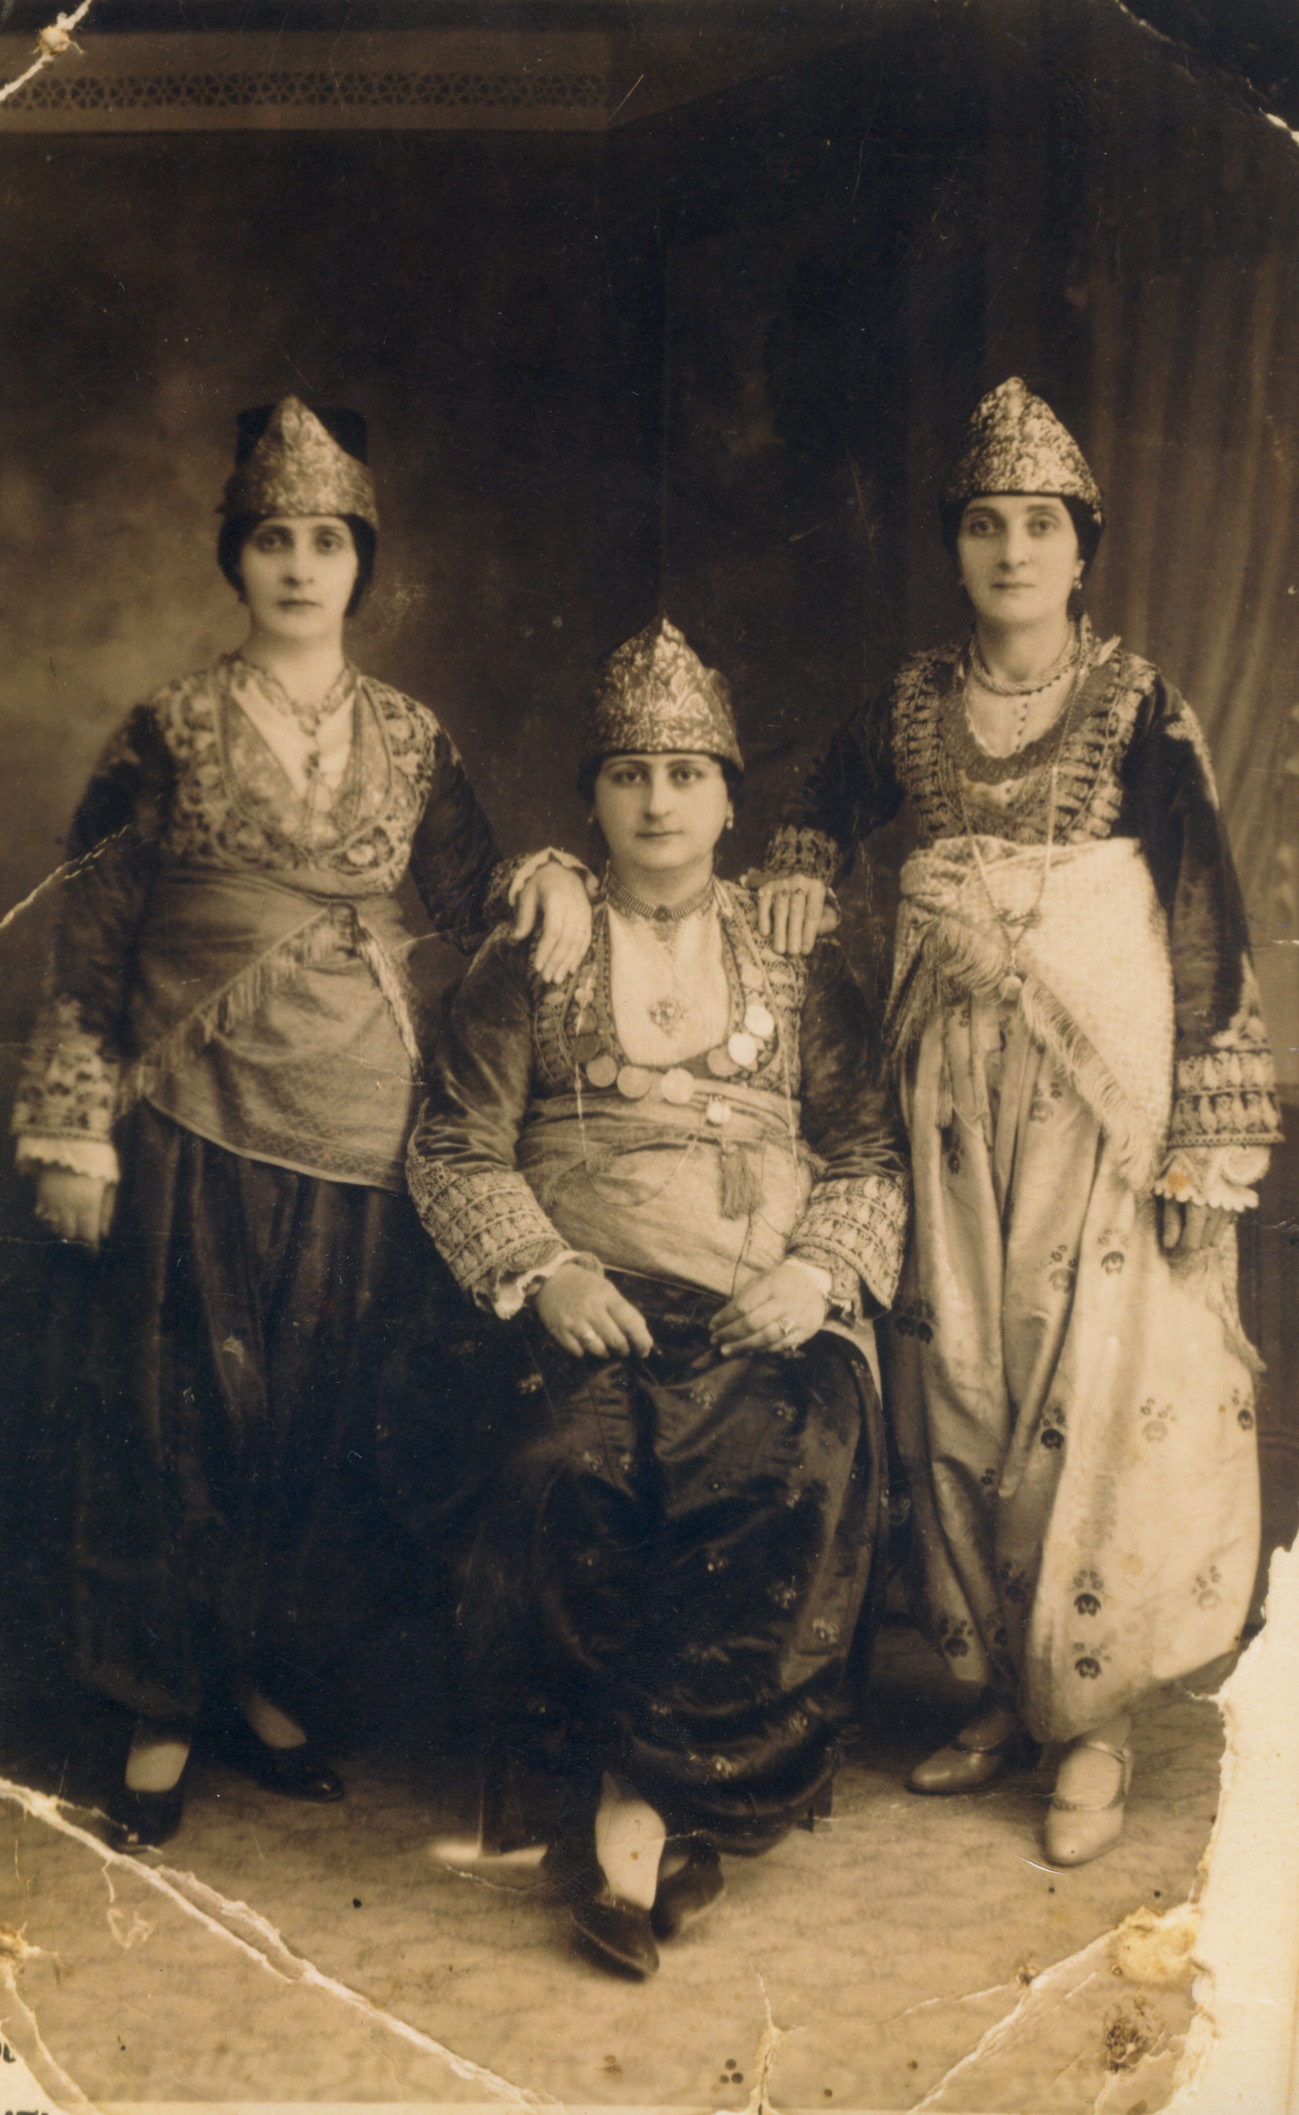 Θείες της Ανάστα Σμυρναίου με τις χρυσοκέντητες στολές τους, φερμένες από τη Σίλε Ικονίου (Έδεσσα, 1930)